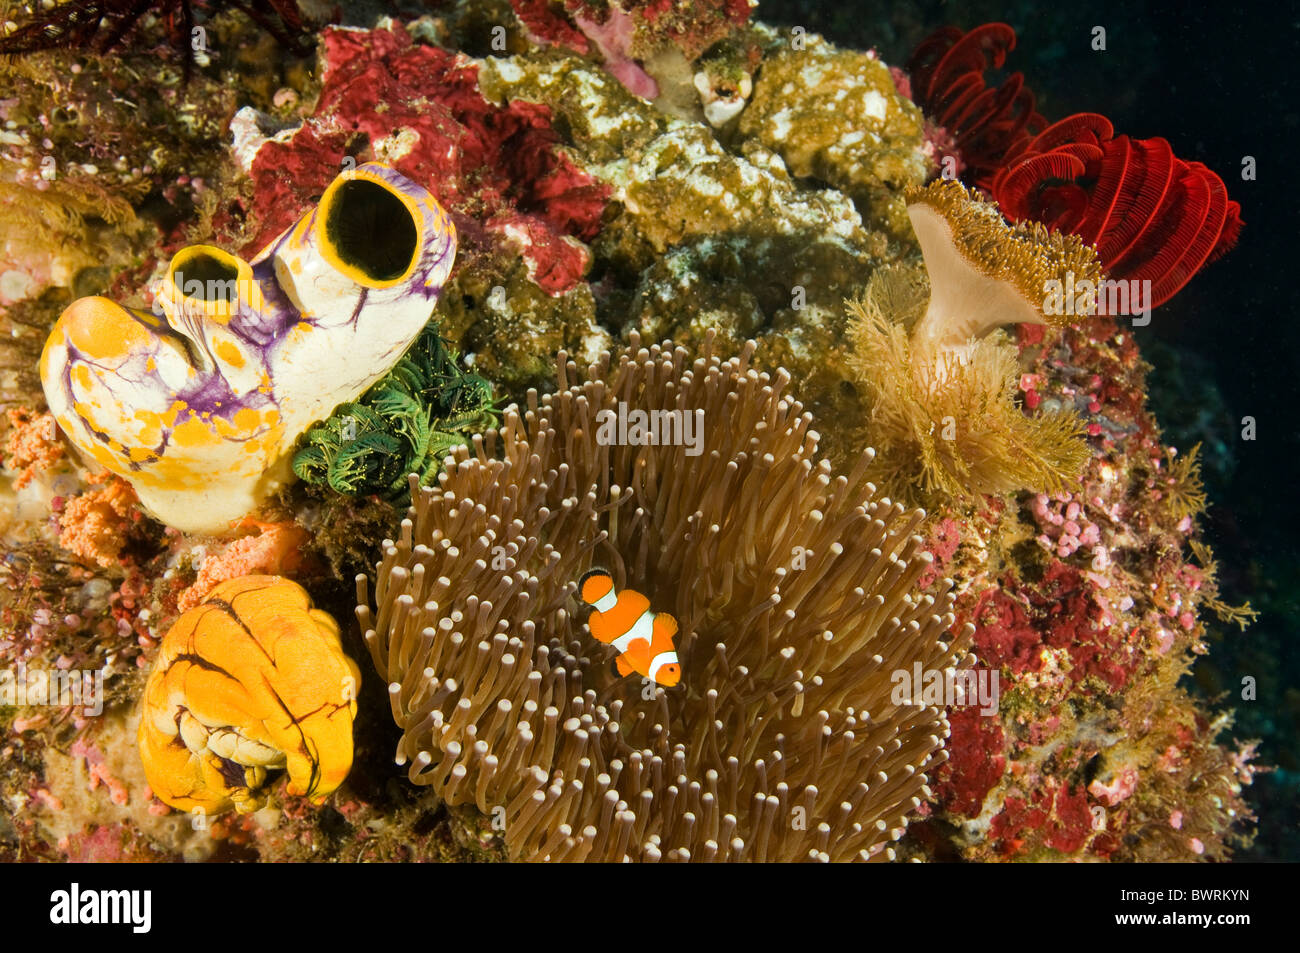 Reef scenic avec poissons clowns, Amphiprion ocellaris, Raja Ampat Indonésie Banque D'Images